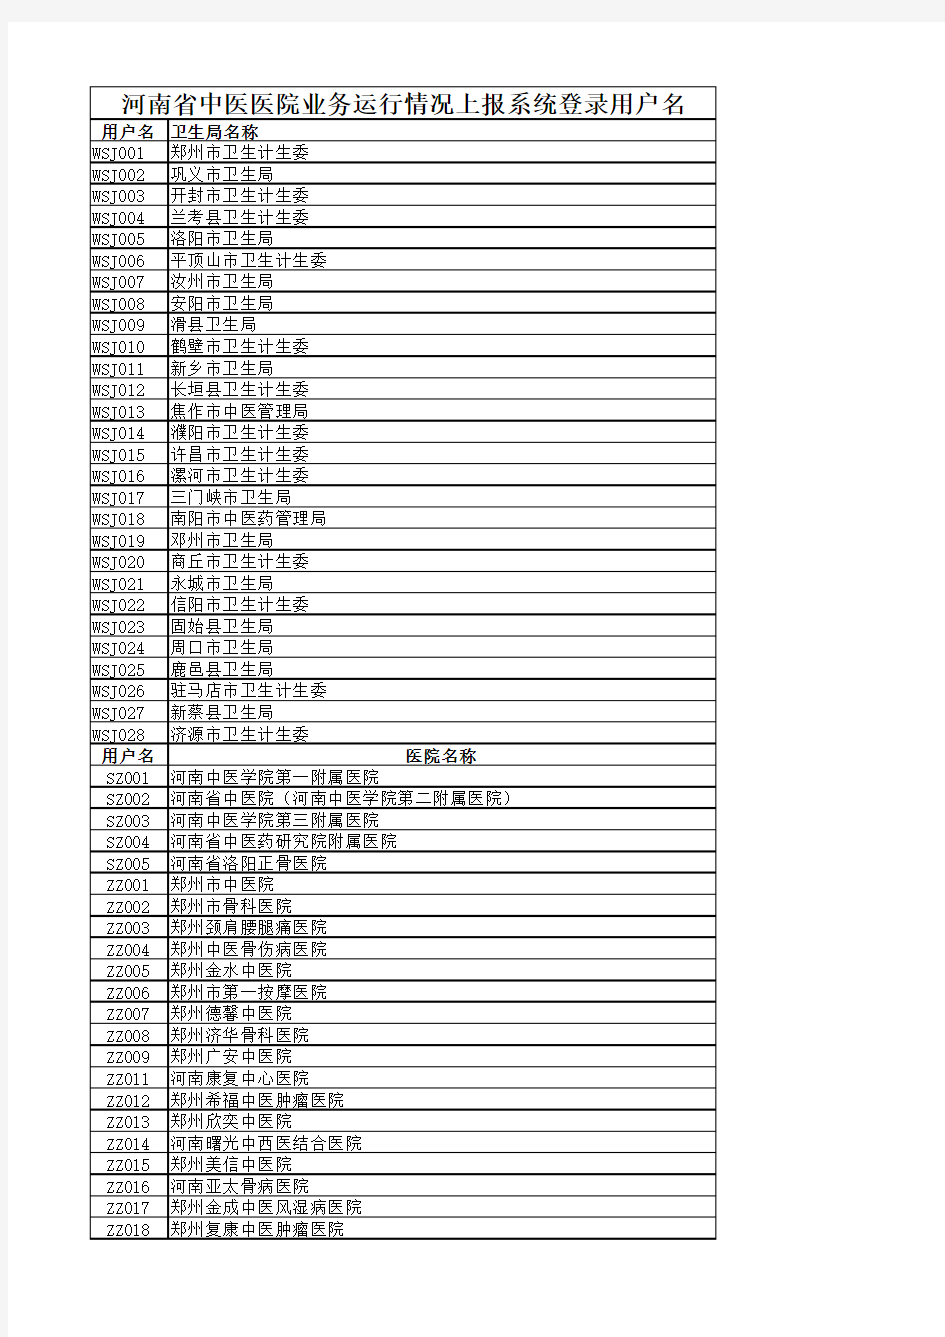 河南省中医医院业务运行情况上报系统登录用户名(2016)